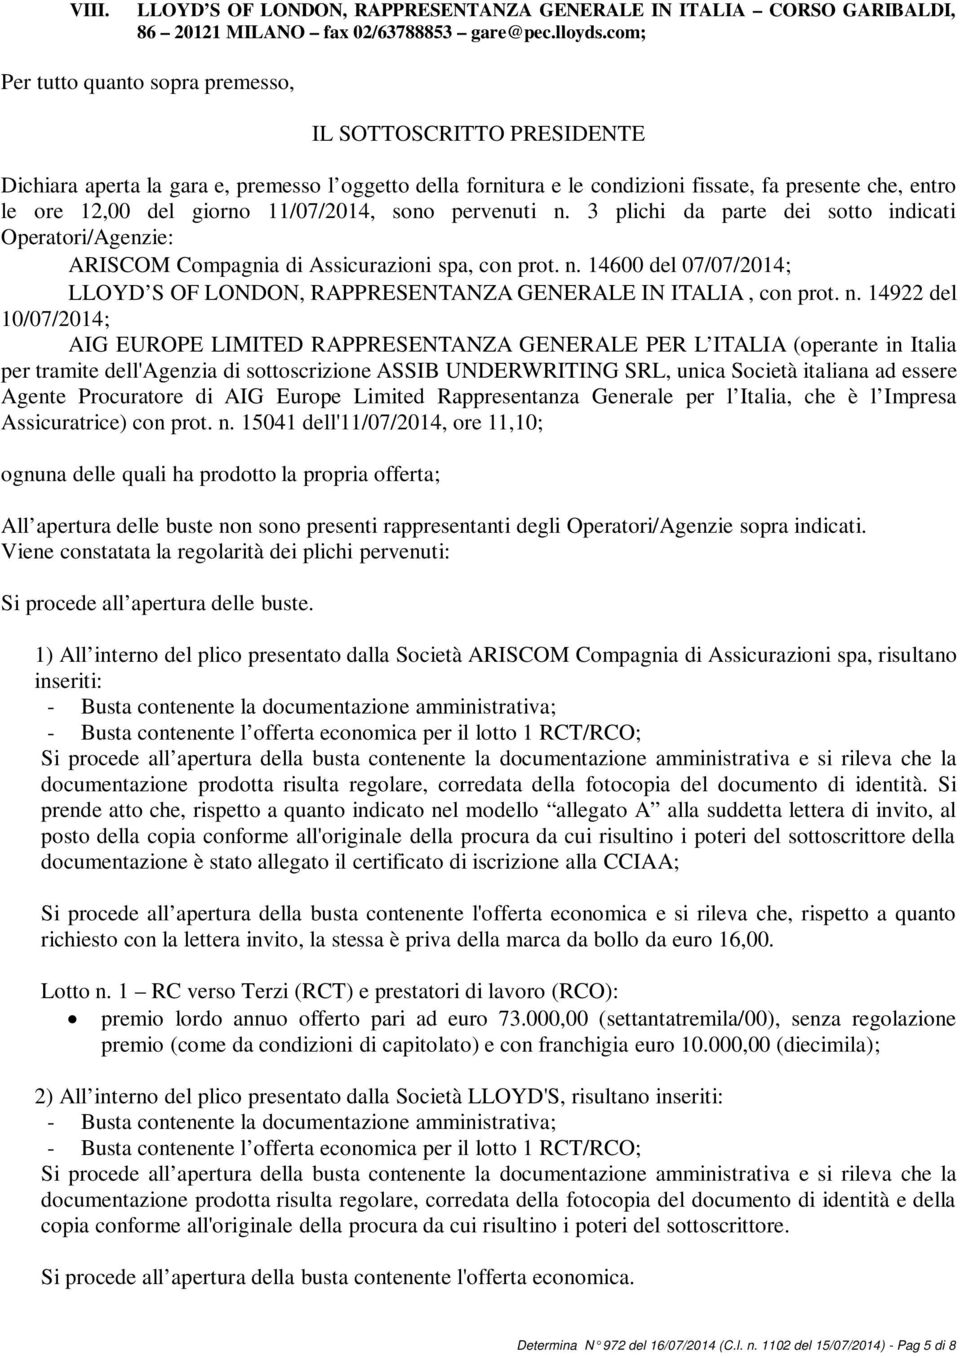 11/07/2014, sono pervenuti n. 3 plichi da parte dei sotto indicati Operatori/Agenzie: ARISCOM Compagnia di Assicurazioni spa, con prot. n. 14600 del 07/07/2014; LLOYD S OF LONDON, RAPPRESENTANZA GENERALE IN ITALIA, con prot.